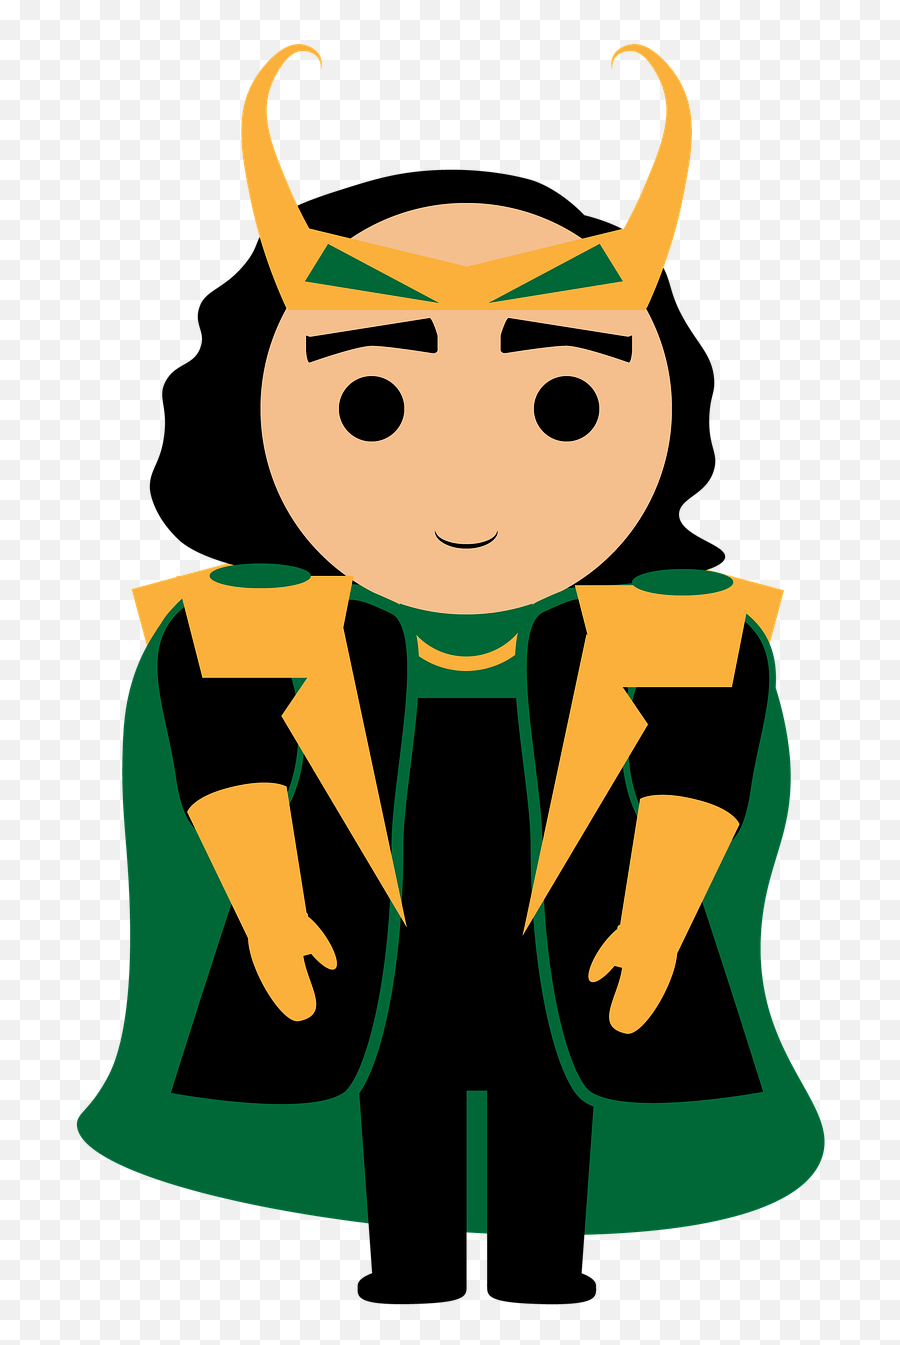 Loki Marvel Thor - Free Image On Pixabay Loki Character Cartoon Png ...